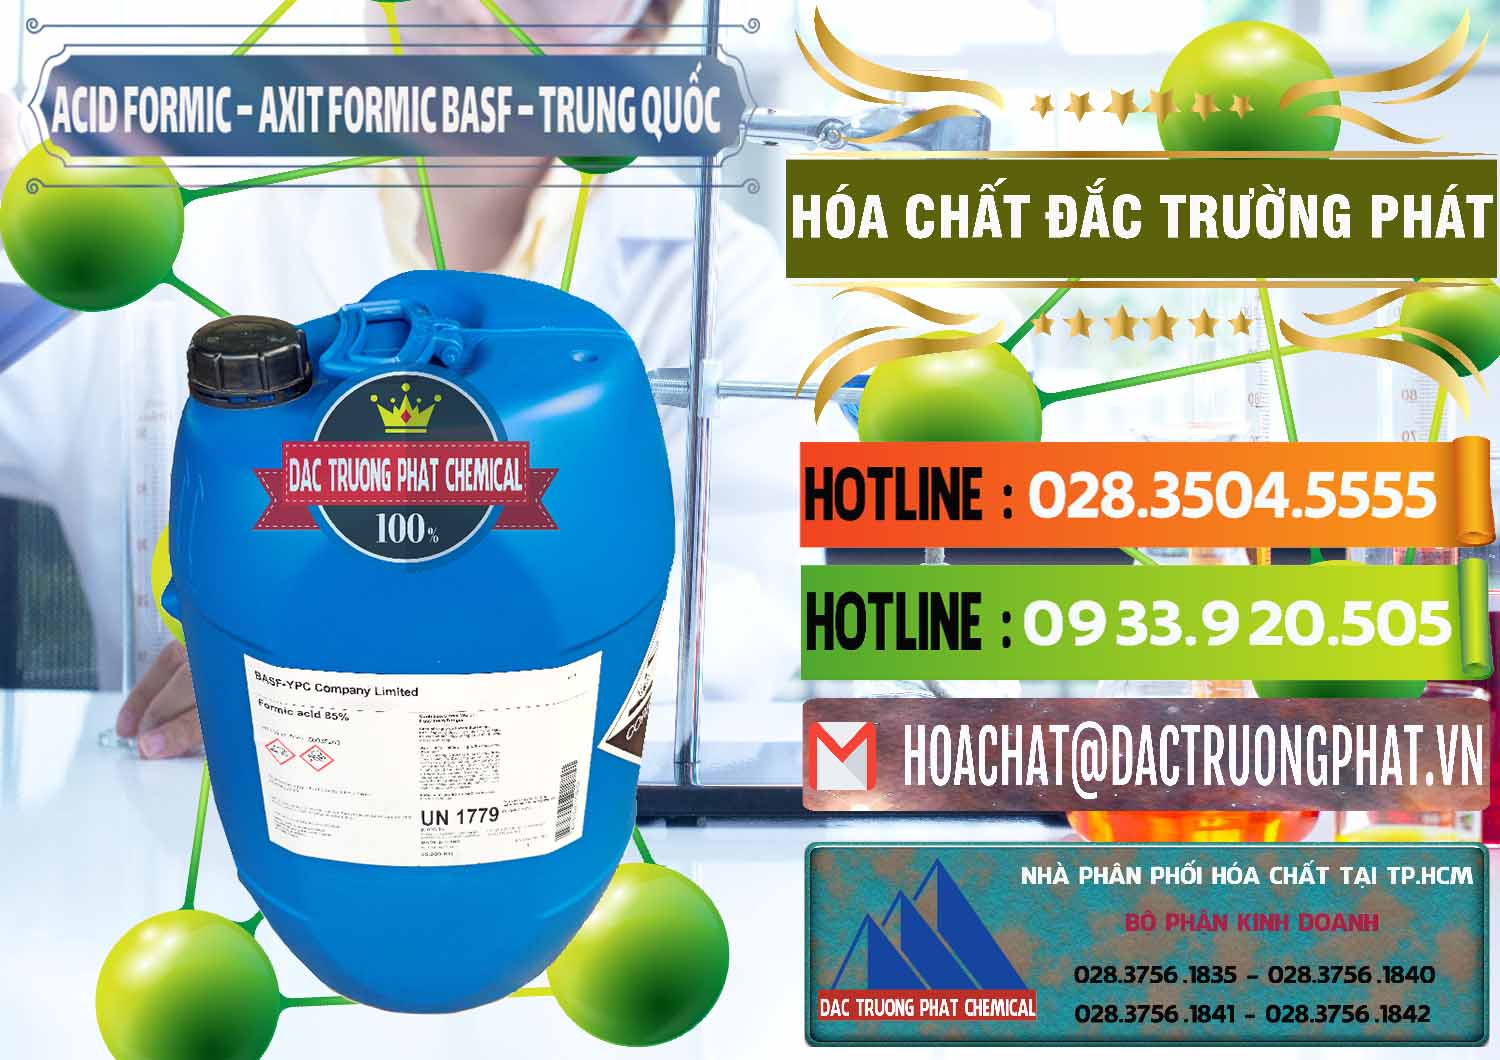 Cty chuyên nhập khẩu và bán Acid Formic - Axit Formic BASF Trung Quốc China - 0025 - Công ty bán - cung cấp hóa chất tại TP.HCM - cungcaphoachat.com.vn